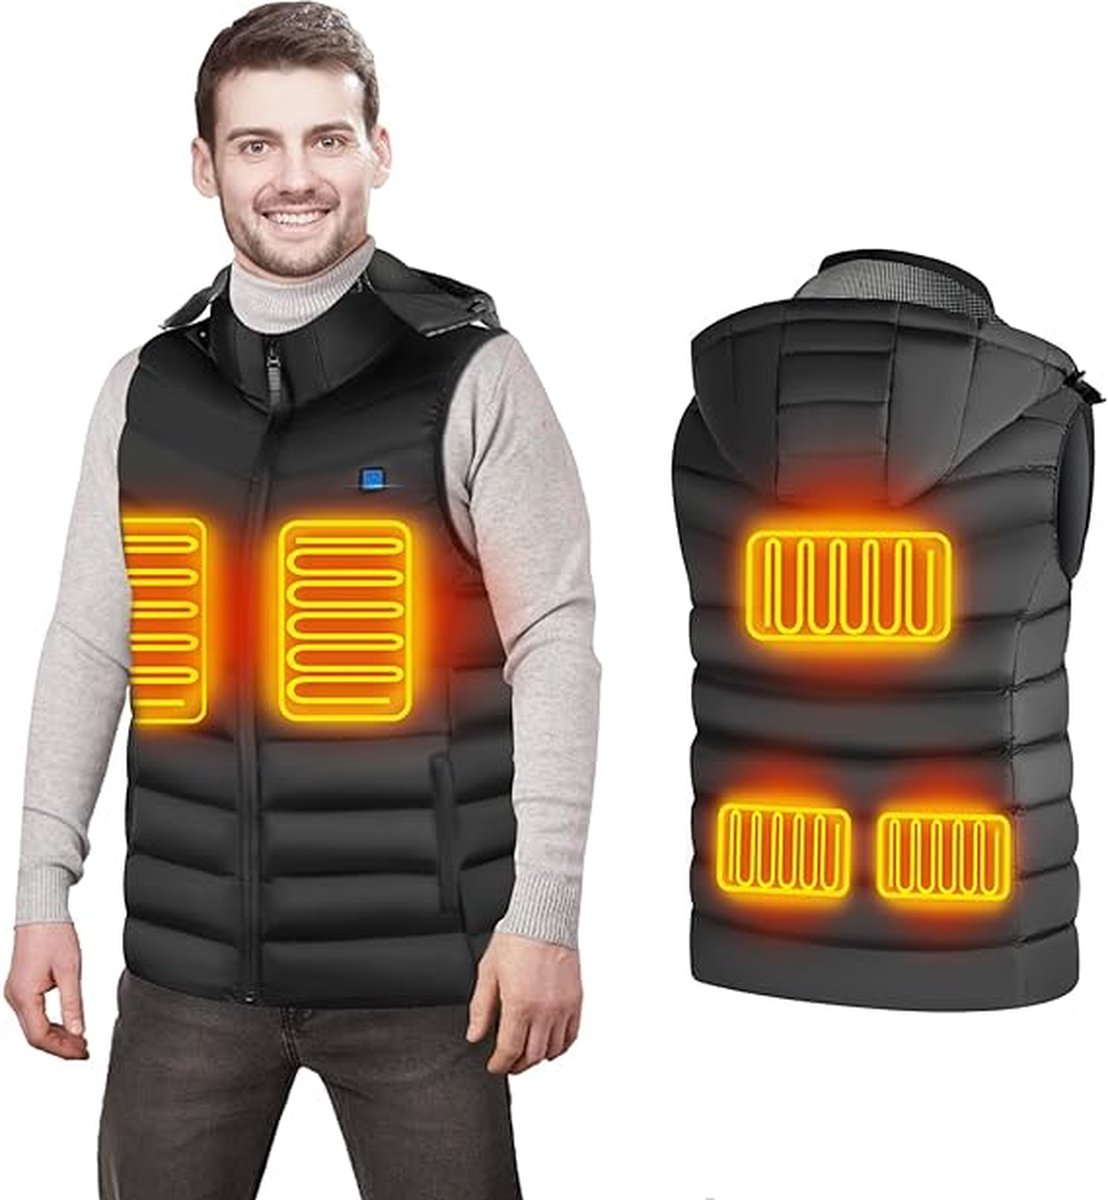 USB verwarmd vest - Voor dames en heren - Maat M - Bodywarmer met 3 warmte niveaus - 5 verwarming zones - Afneembare capuchon - Verstelbare temperatuur - Zwart